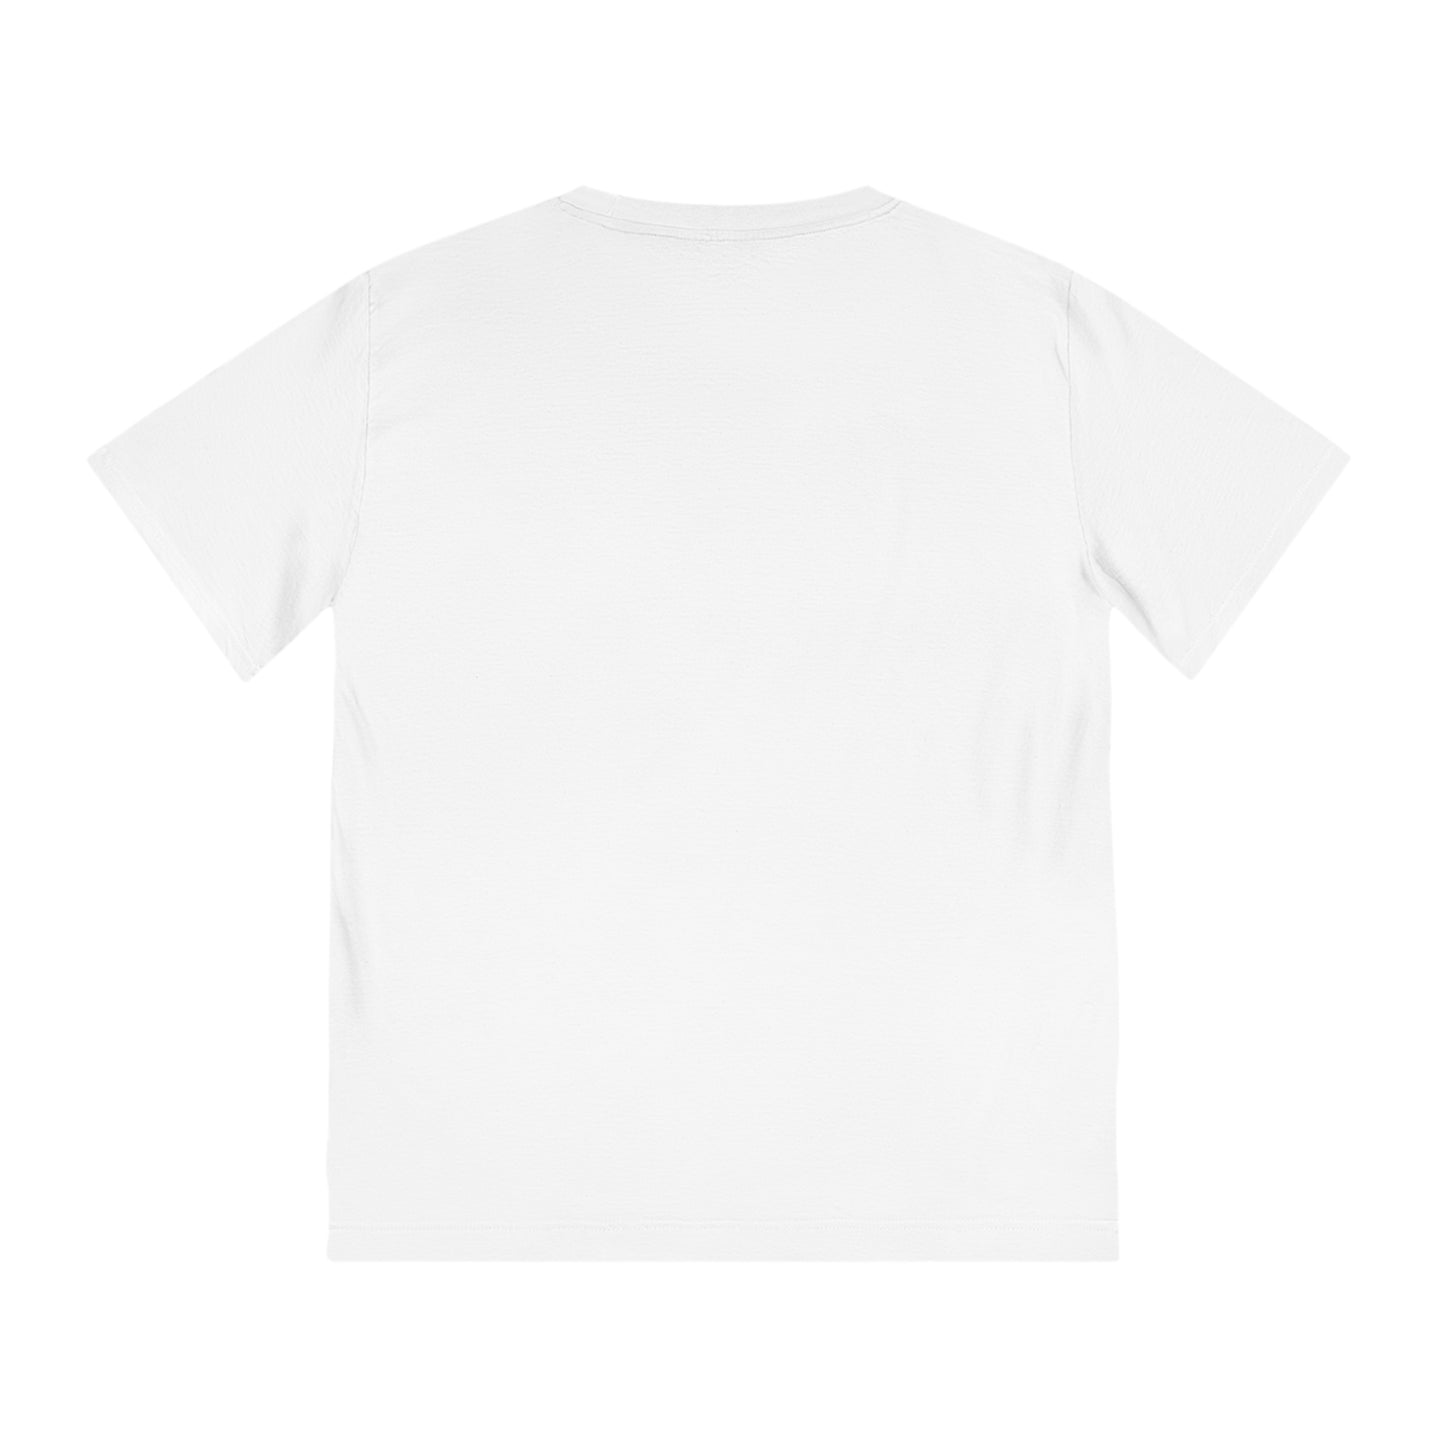 TROPICAL SIMPLE CITY 101 - Unisex Rocker T-Shirt